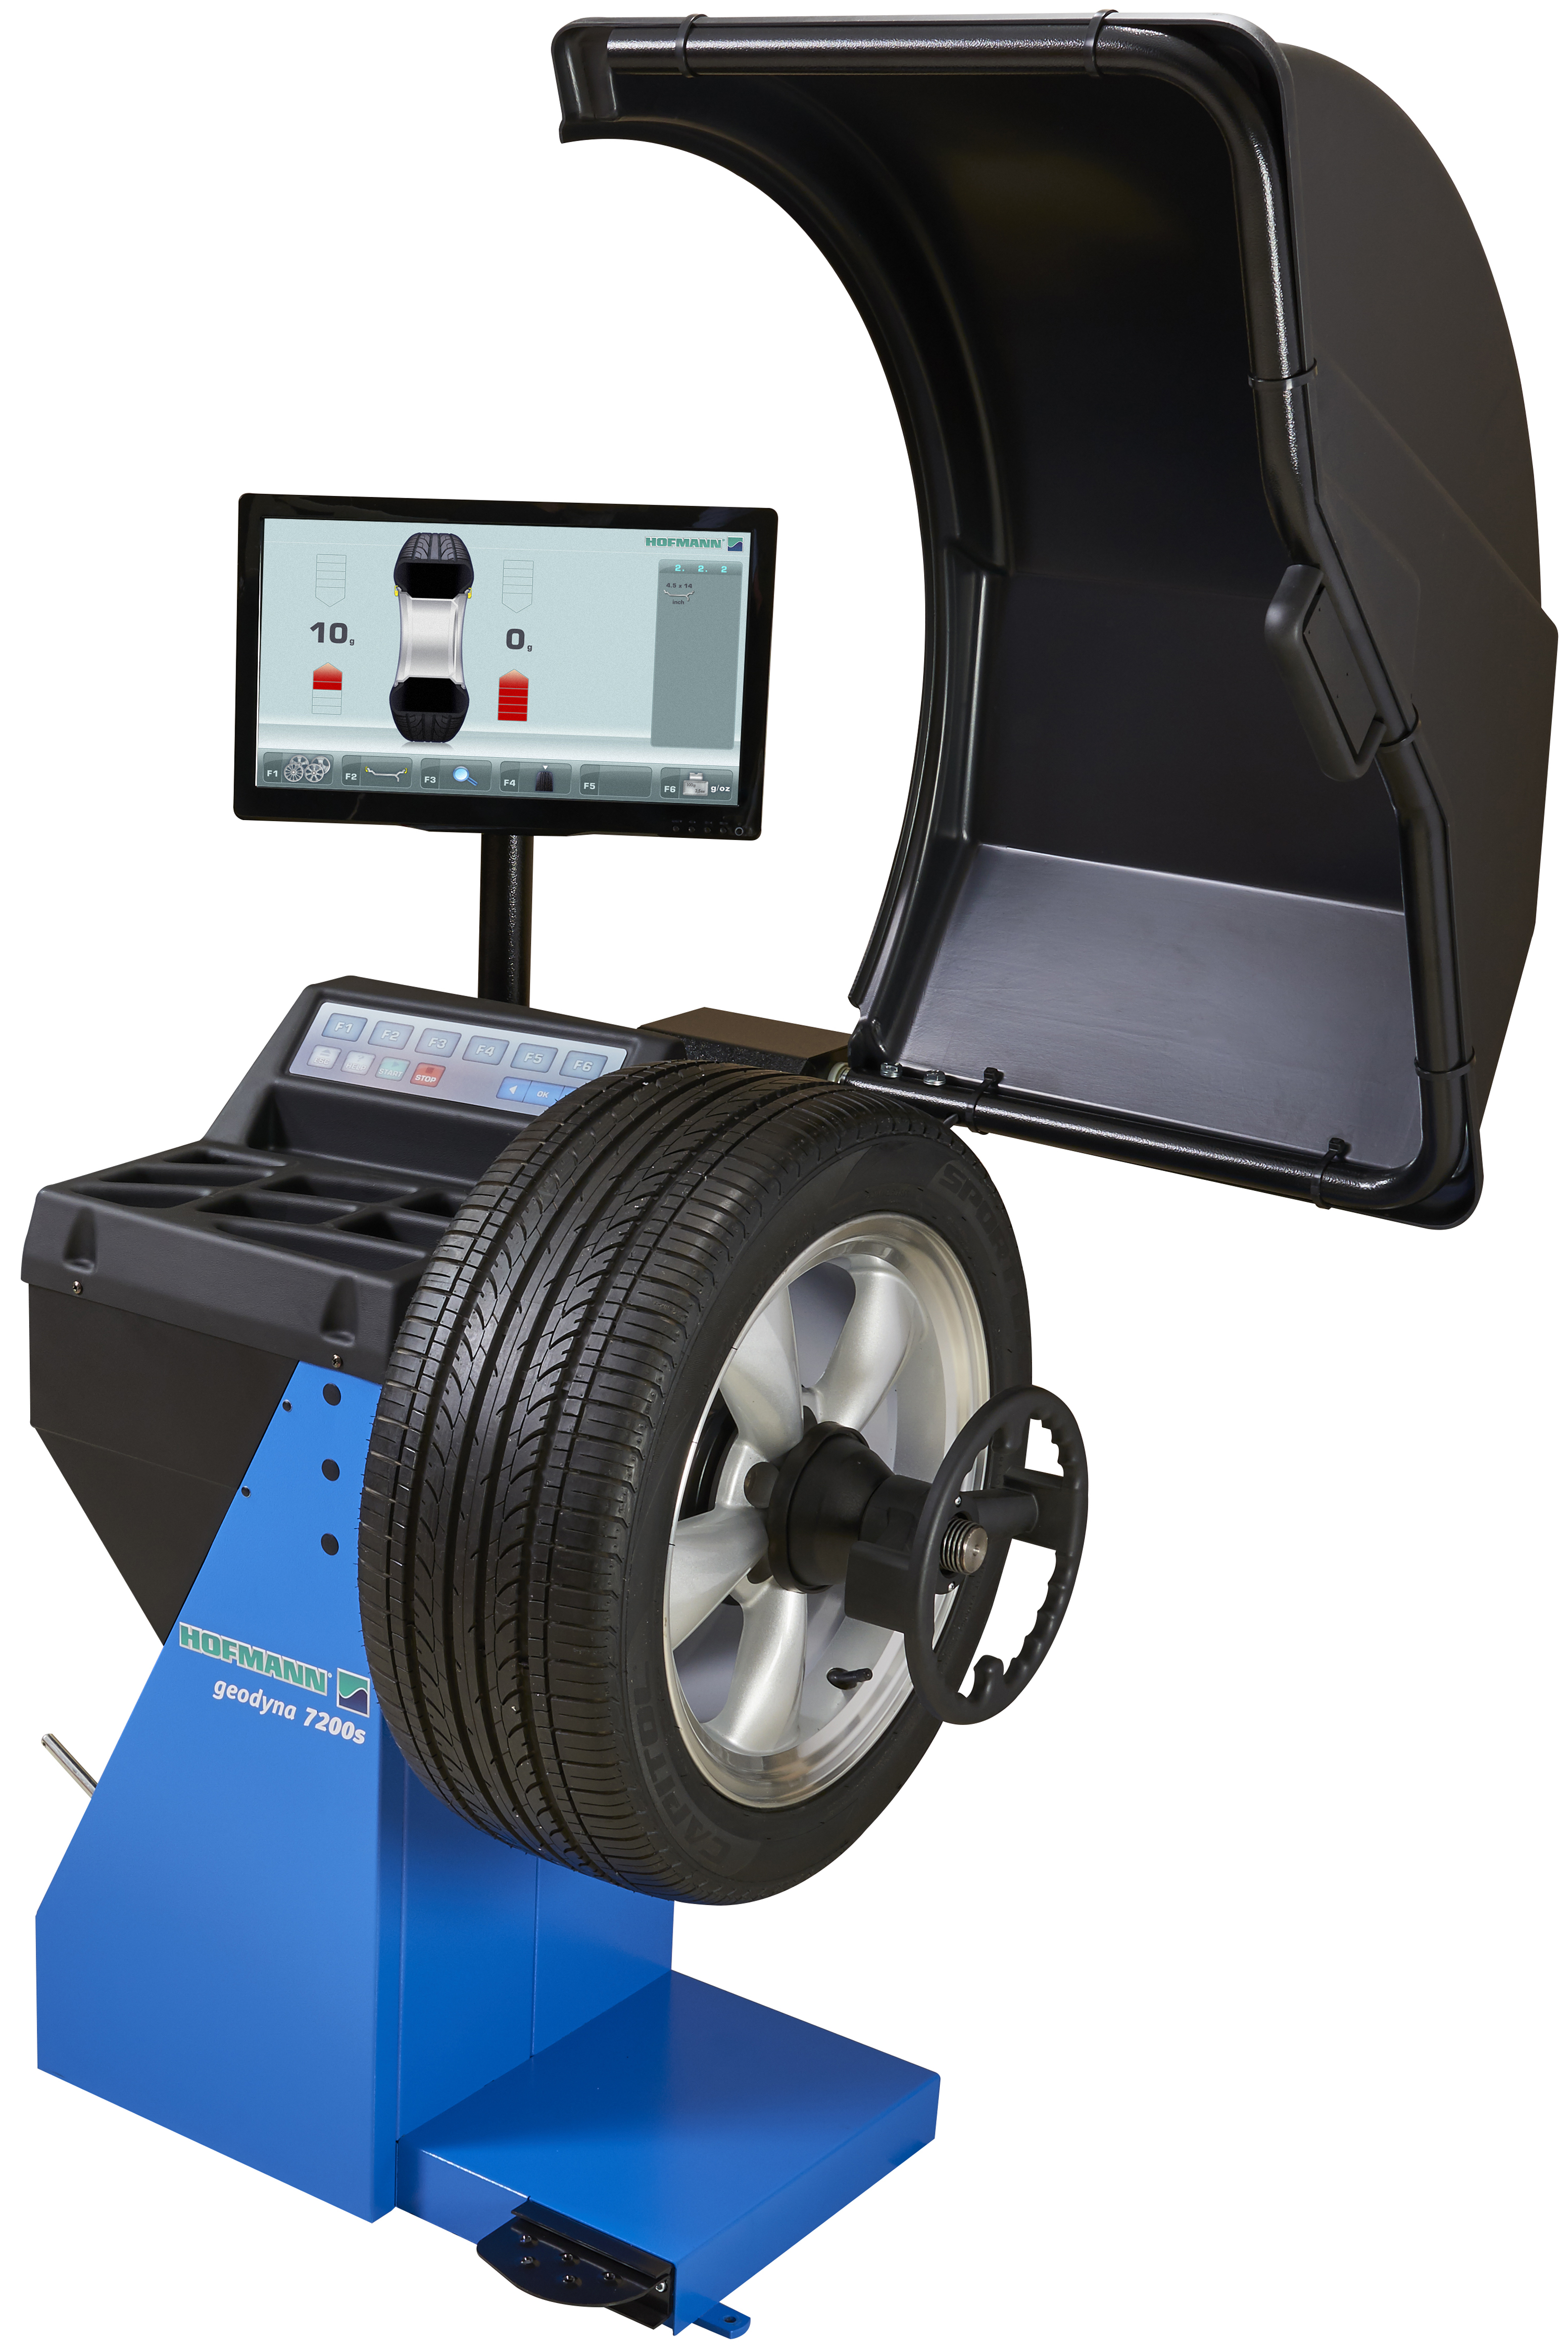 Hofmann - Geodyna®7200S Wheel Balancer with LCD Monitor -  EEWB746AS